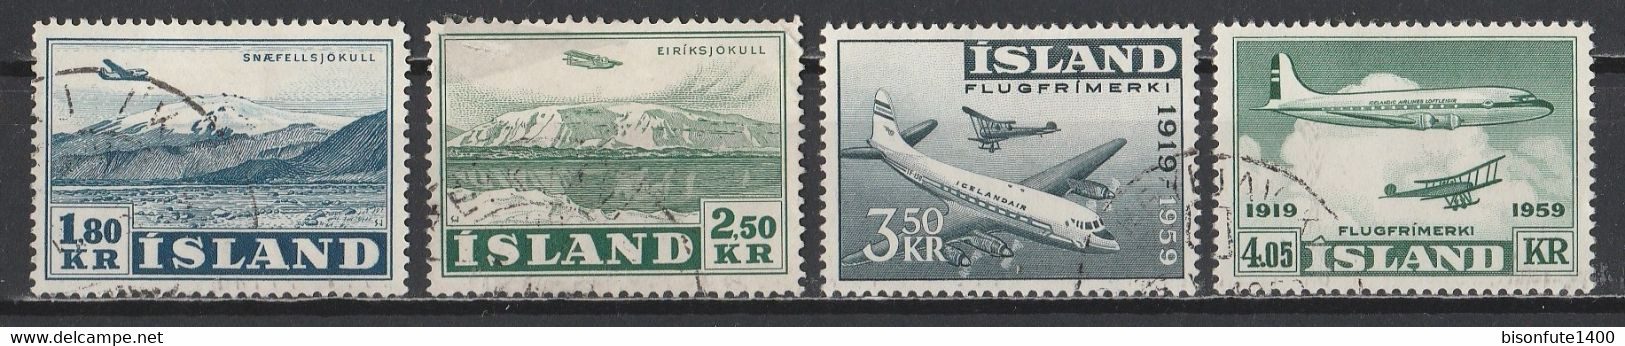 Islande Aérien 1952 Et 1959 : Timbres Yvert & Tellier N° 27 - 28 - 30 Et 31 Oblitérés. - Luftpost